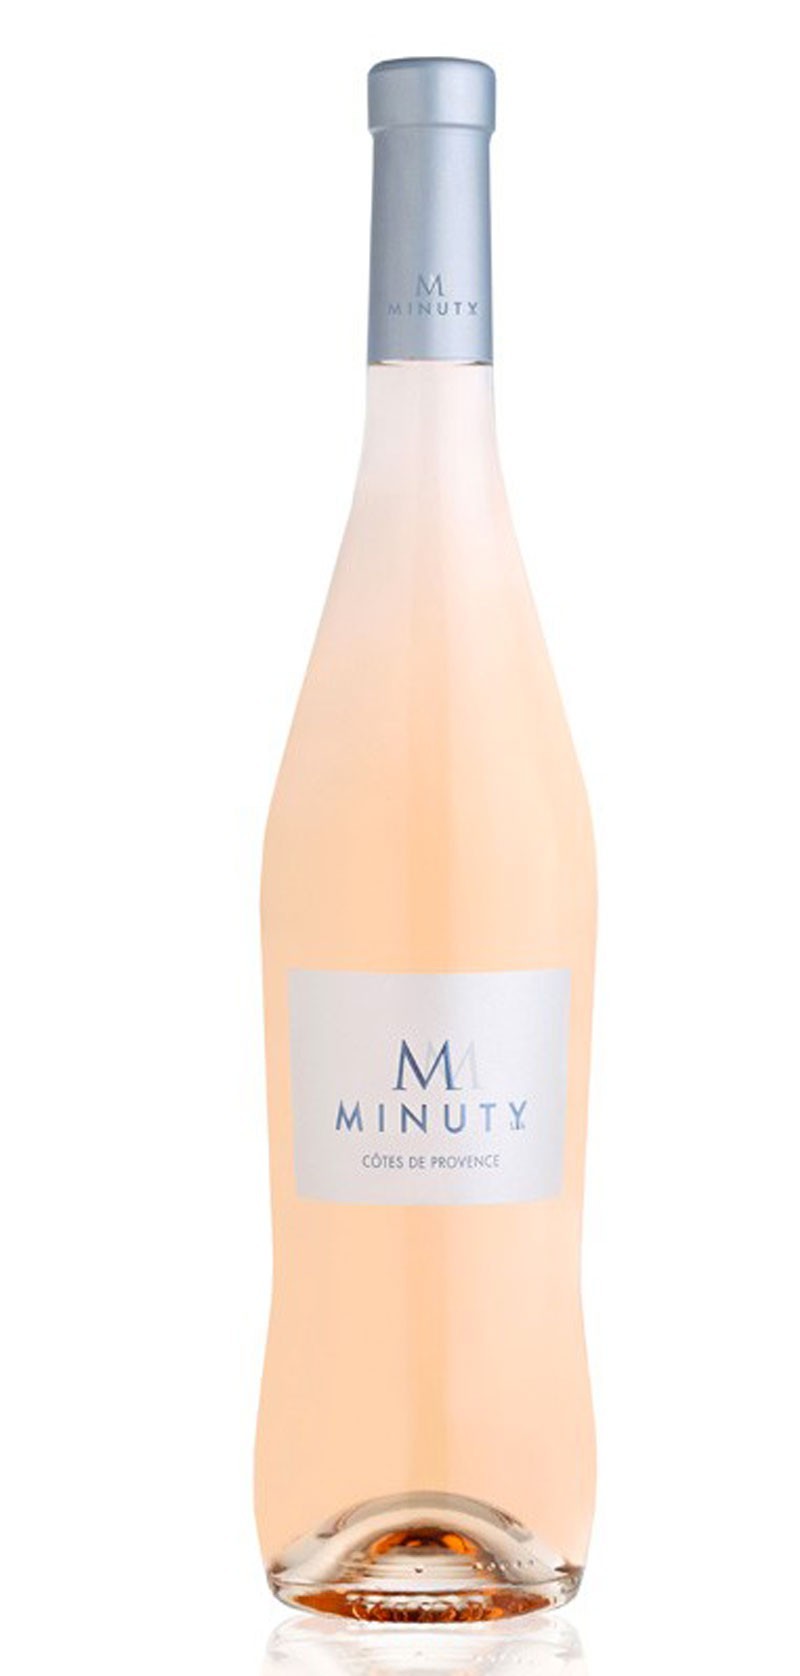 M de Minuty Rosé - 2021 Château Minuty - Vin Rosé